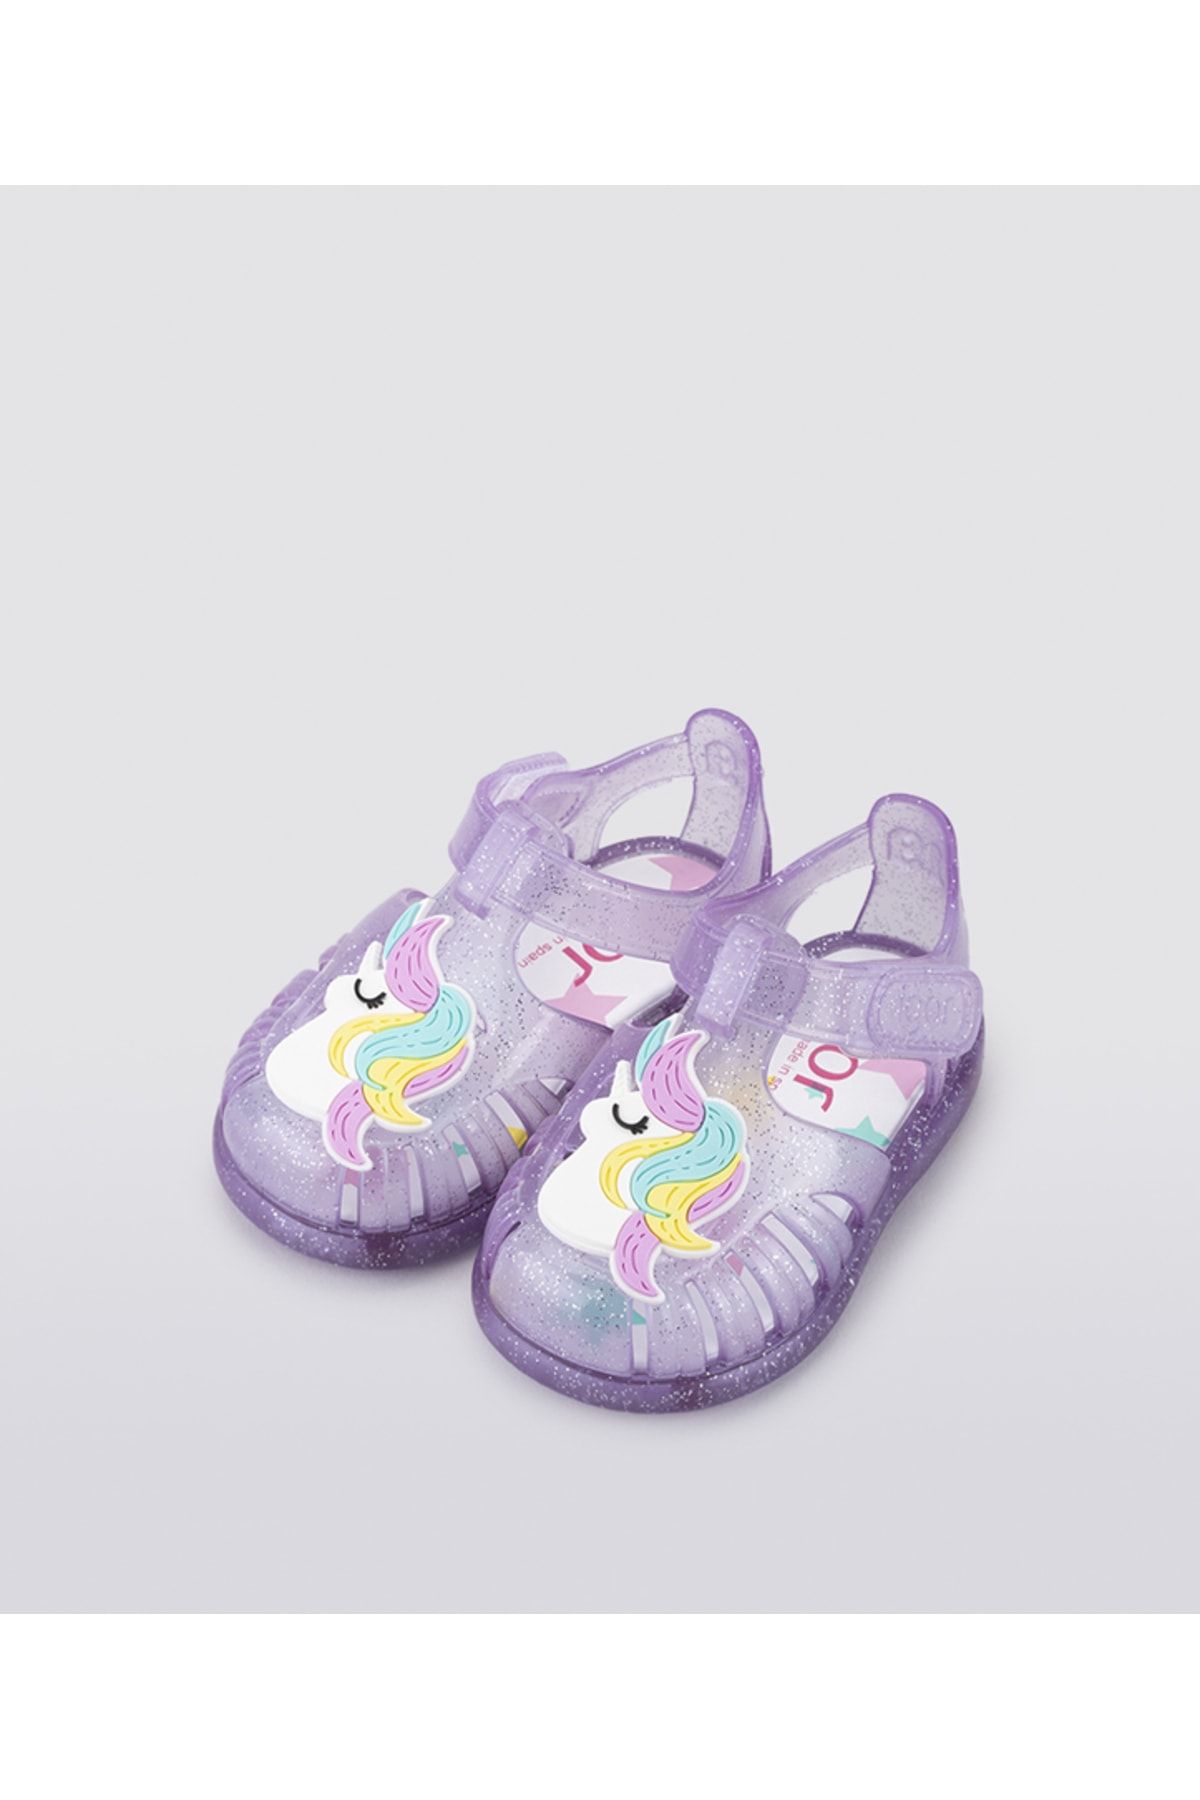 IGOR S10279 Tobby Unicorn Kız Çocuk Simli Mor Sandalet